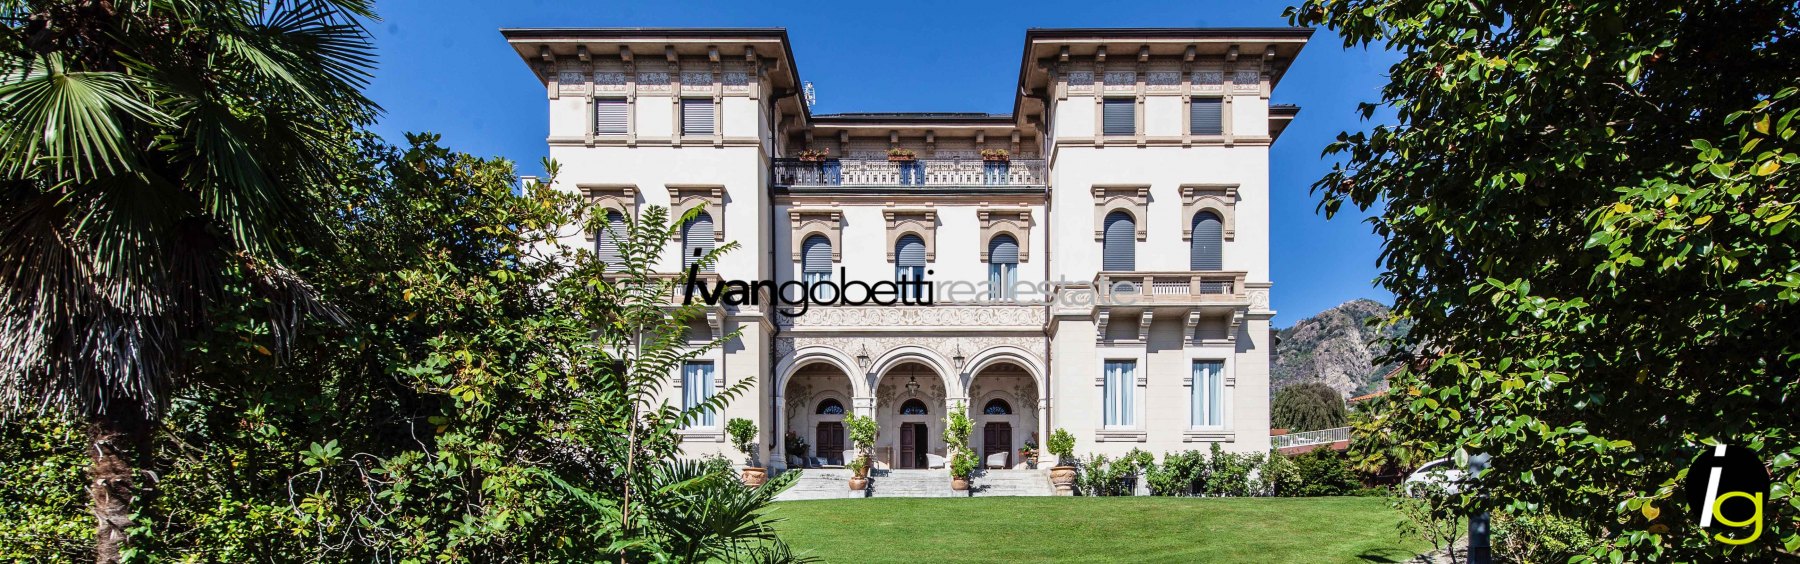 Luxury historic villa for sale on Lake Maggiore Baveno – Villa Gavazzeni<br/><span>Product Code: 110877